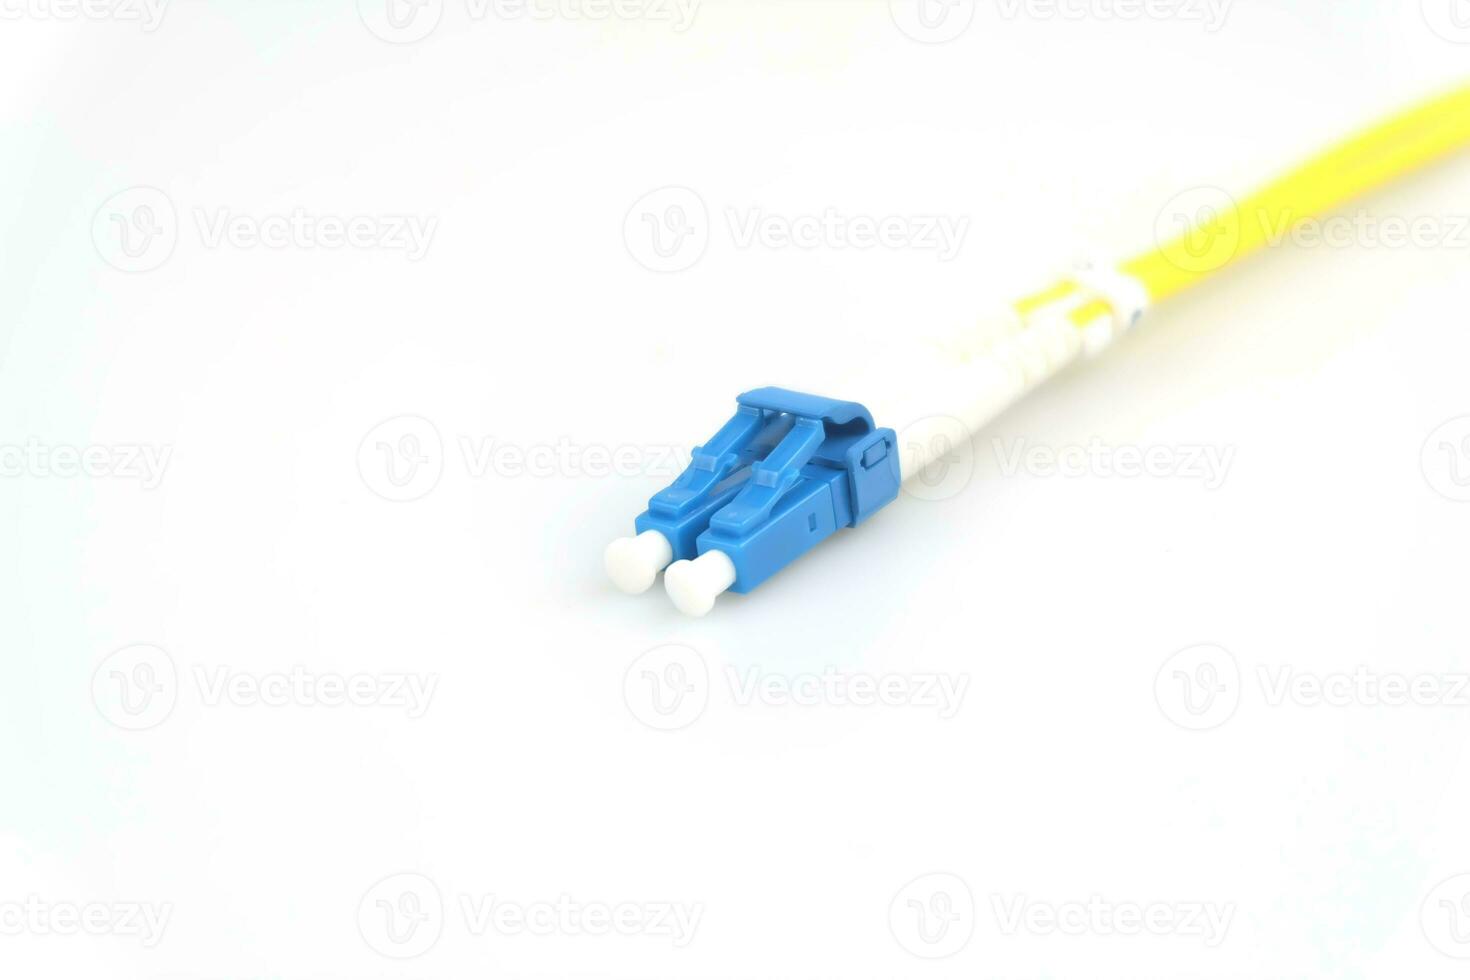 fiber optisk kabel- kontakt typ lc, isolerat på vit bakgrund foto